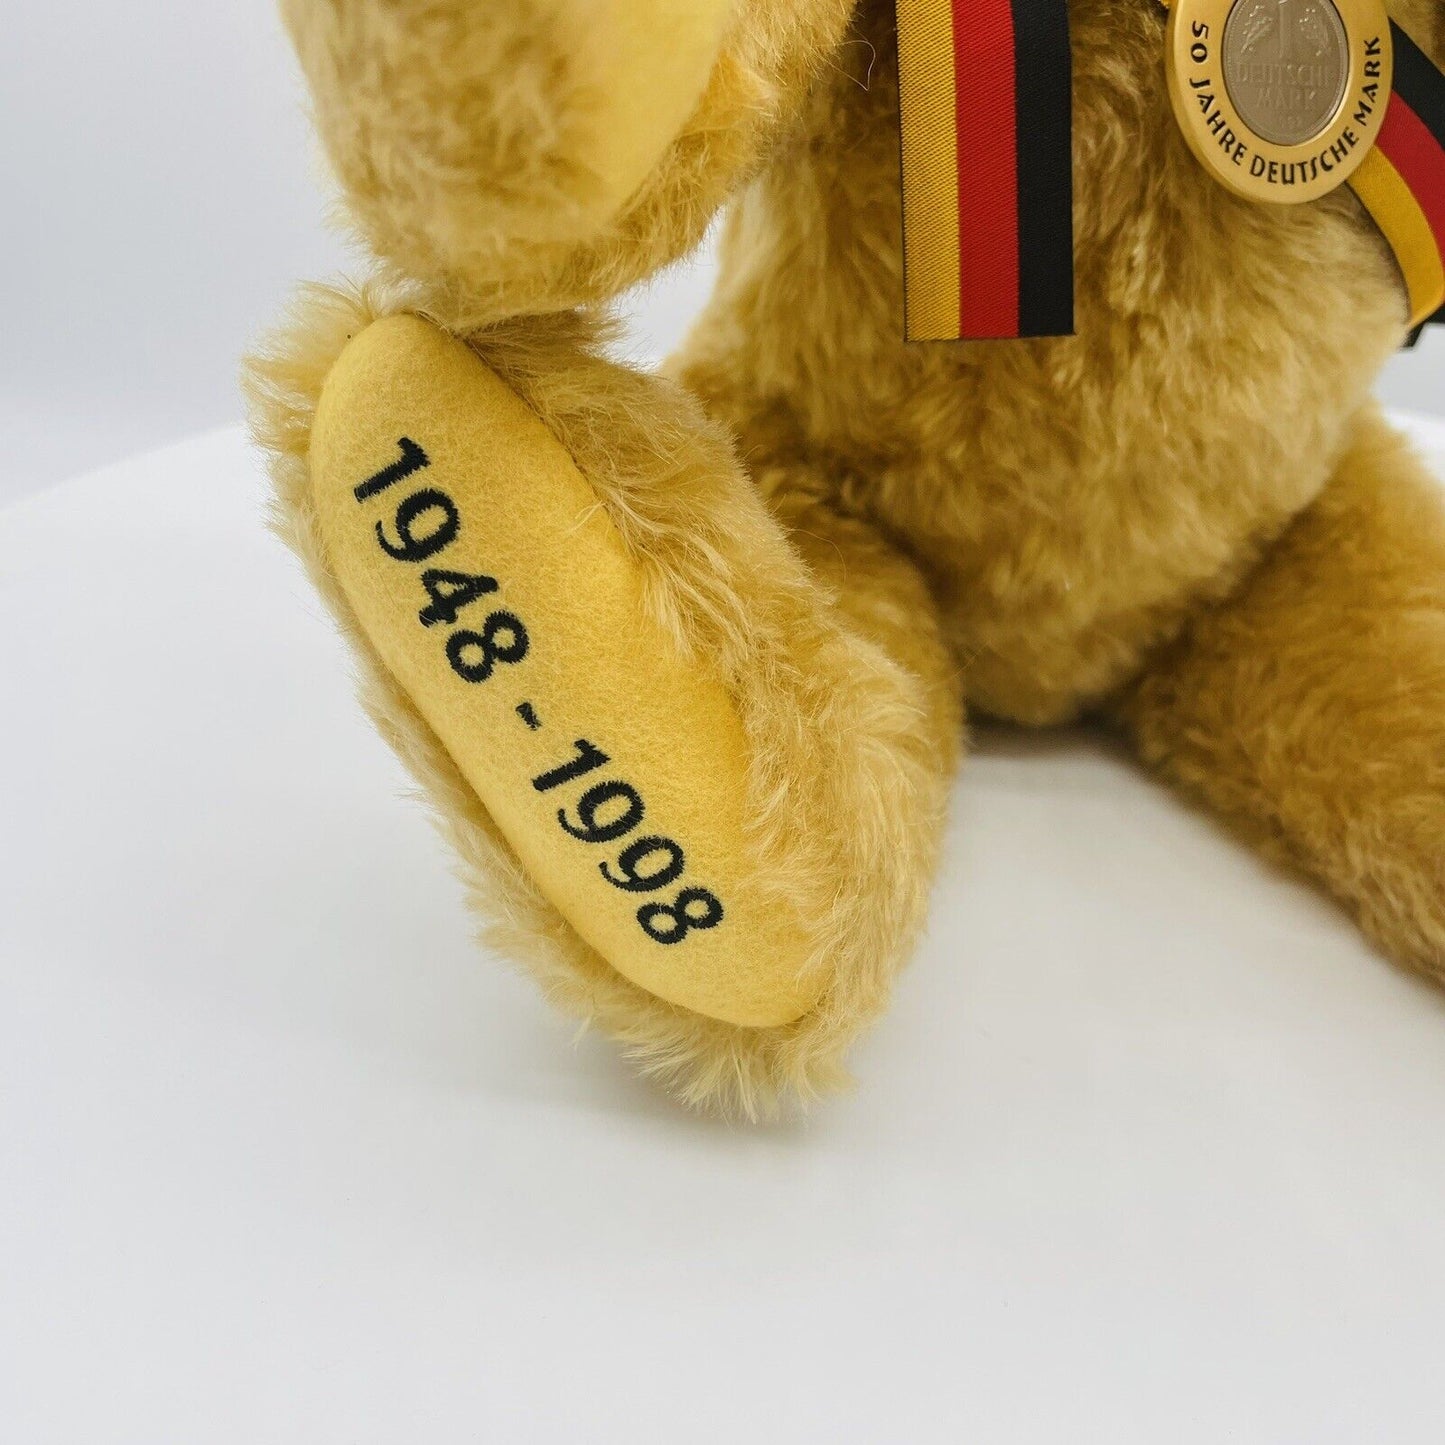 Steiff Teddybär Herbert 655395 limitiert 1500 aus 1999 45cm Mohair